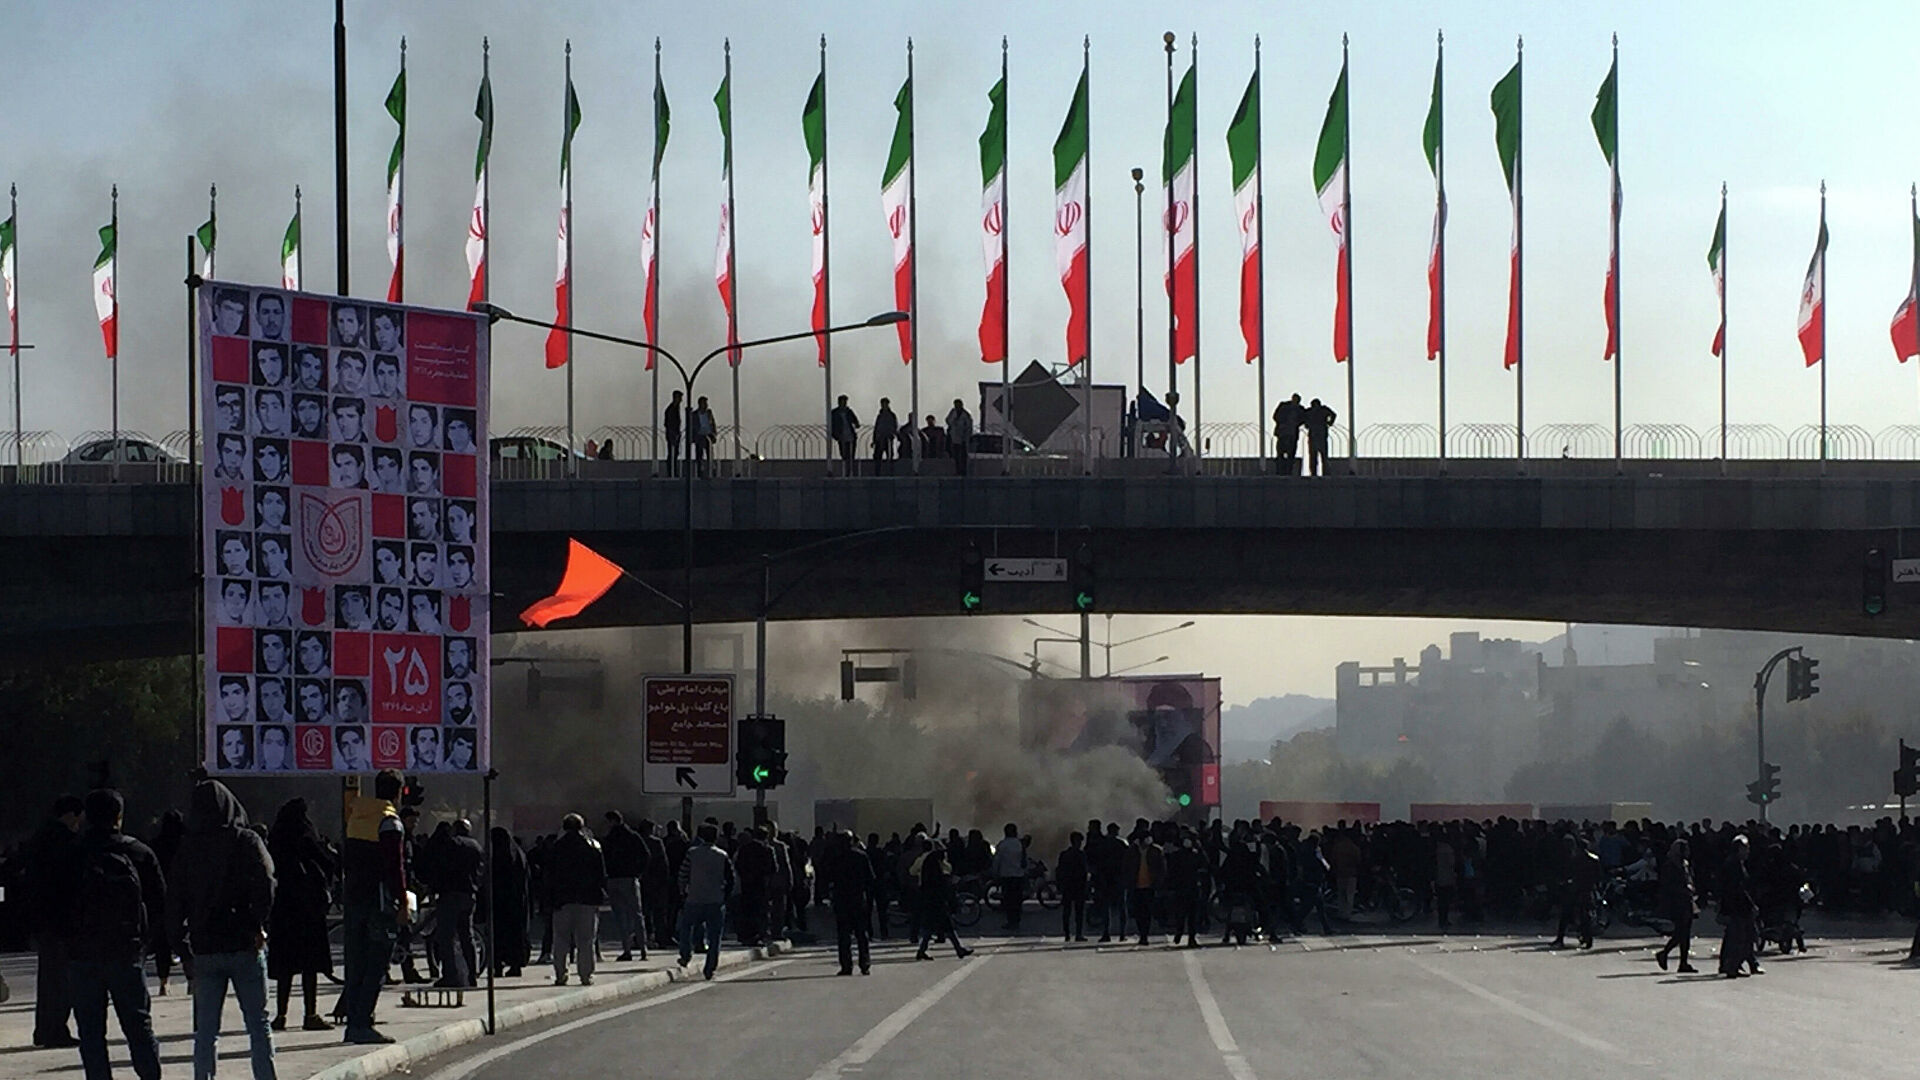 Раяд Маждалани: Принц в изгнании и два бывших президента осуждают насилие в отношении демонстрантов Ирана 